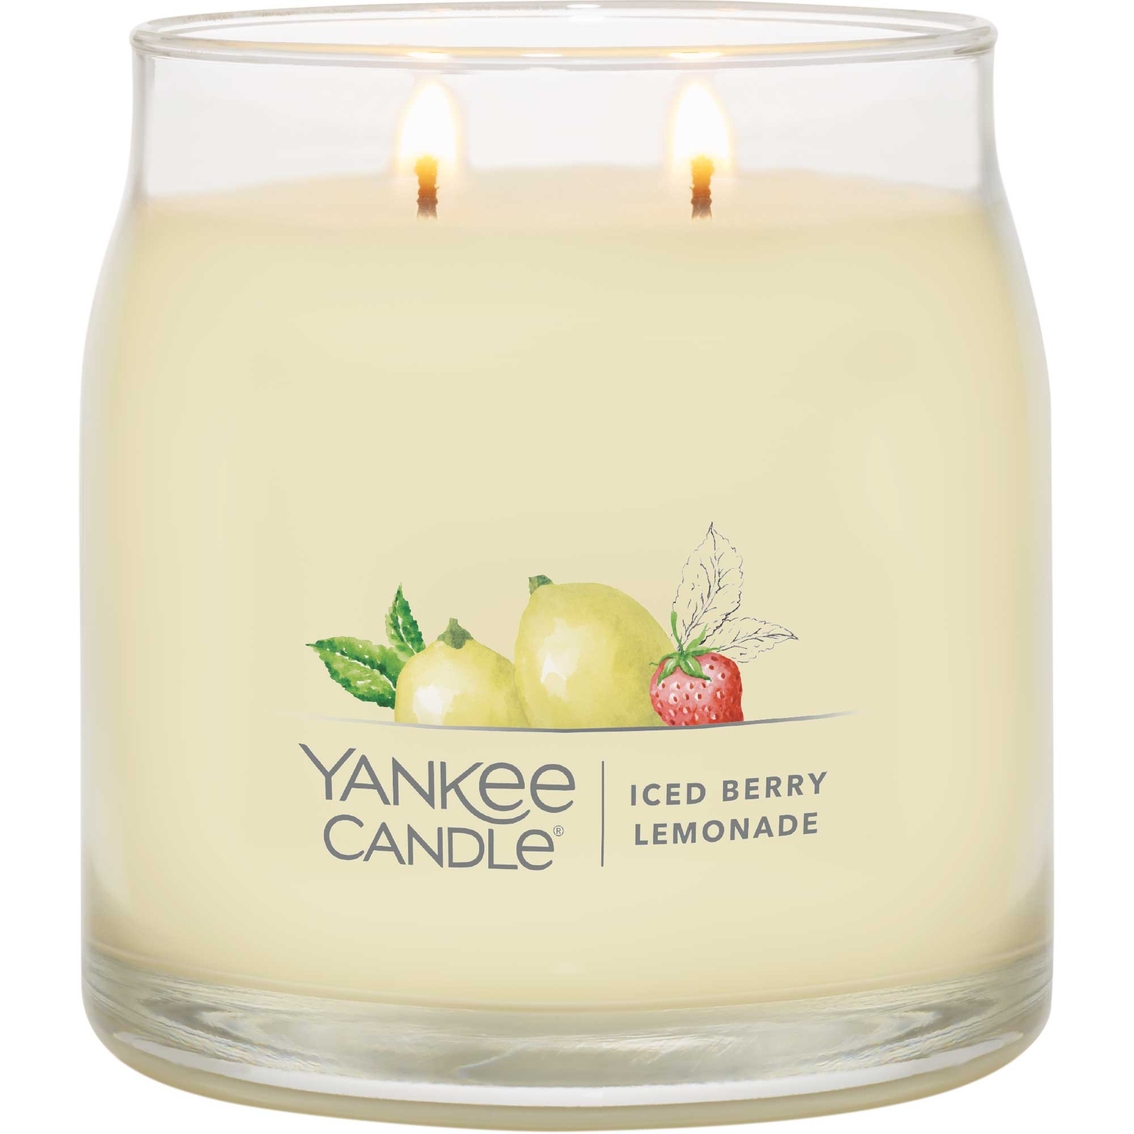 Yankee Candle Iced Berry Lemonade Signature Medium Jar Candle - Image 2 of 2